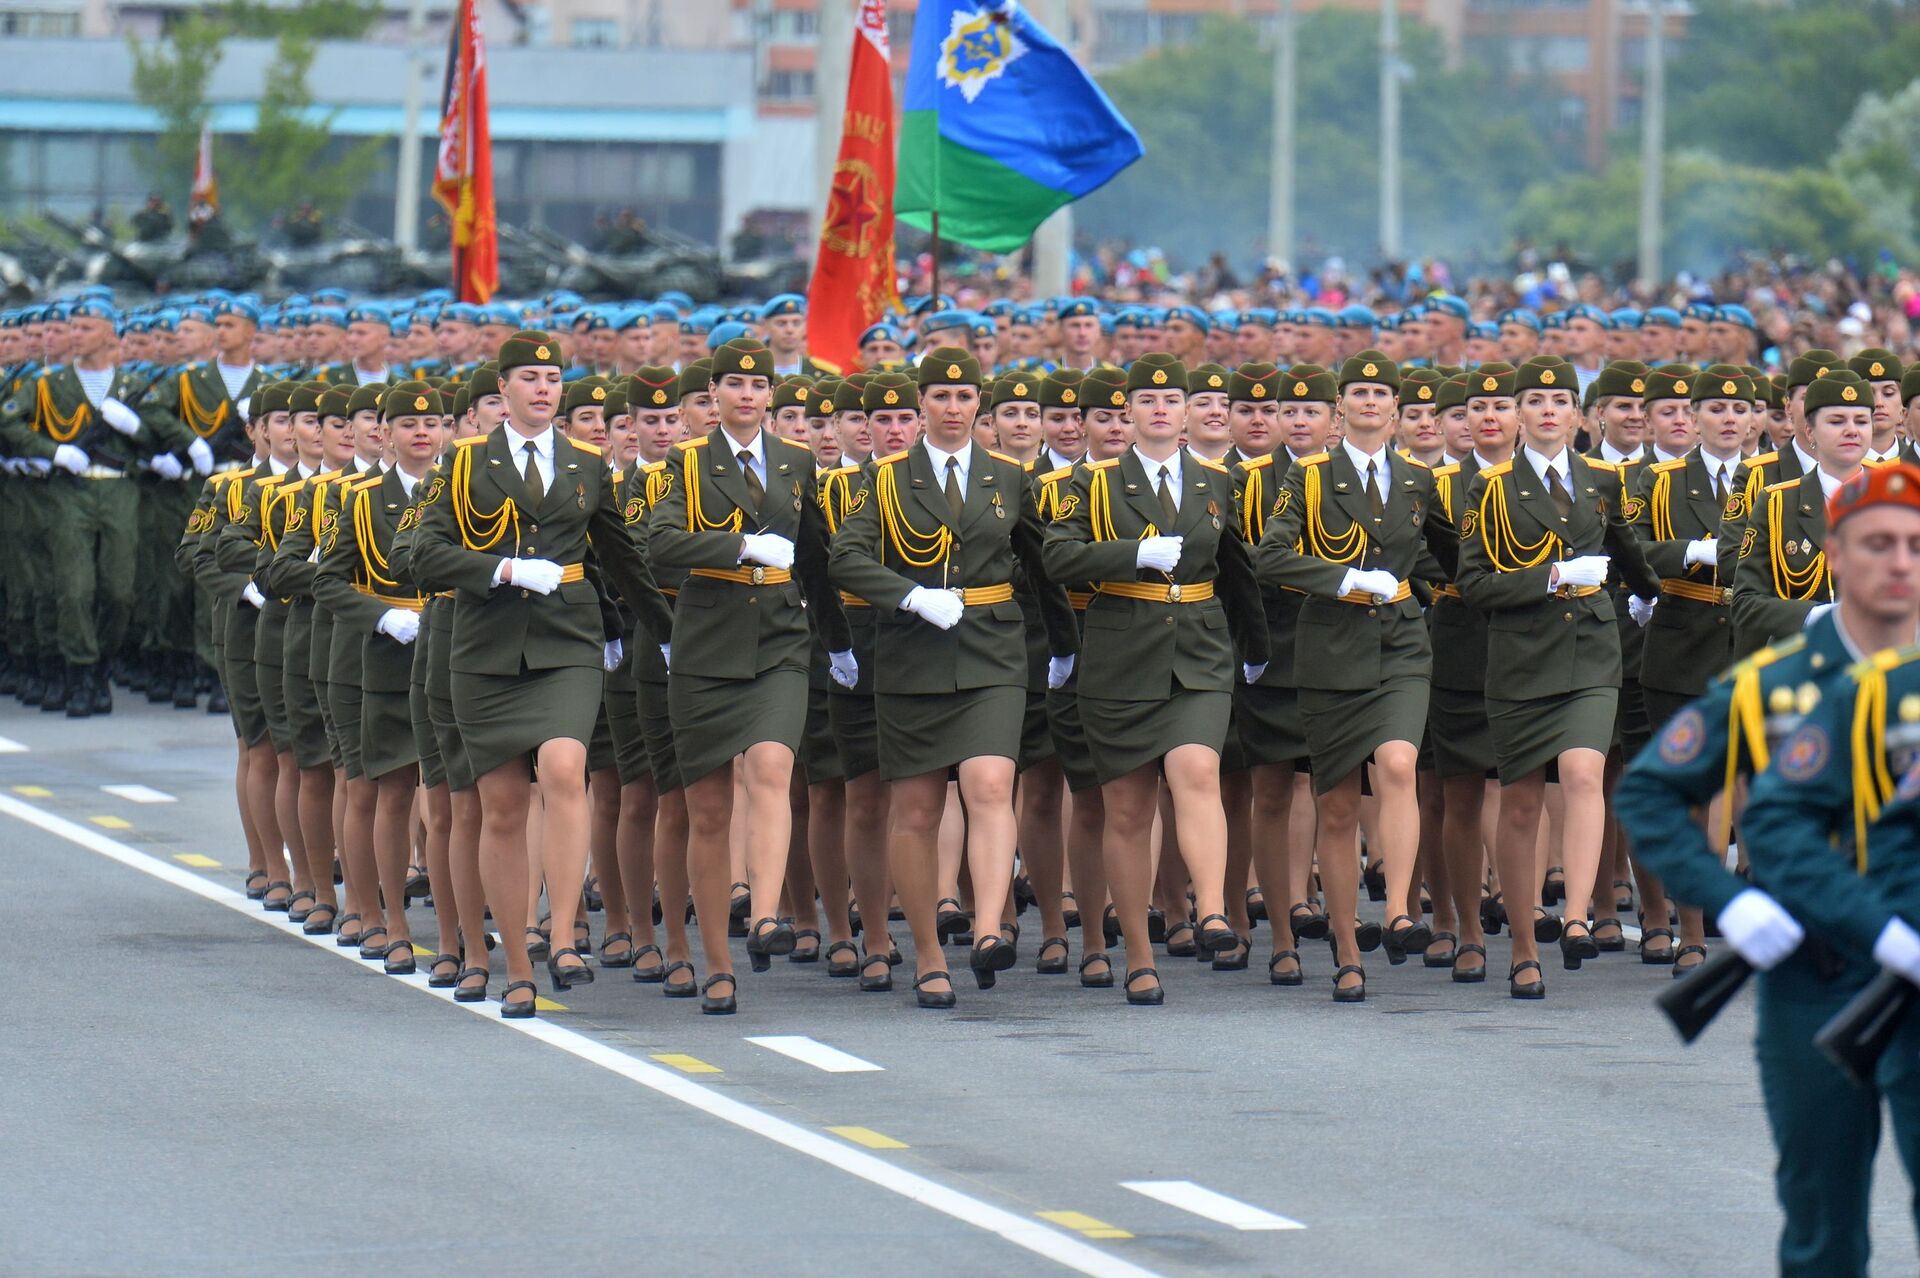 Впервые в этом году в параде приняли участие девушки - причем такая честь выпала только лучшим - Sputnik Беларусь, 1920, 28.06.2022